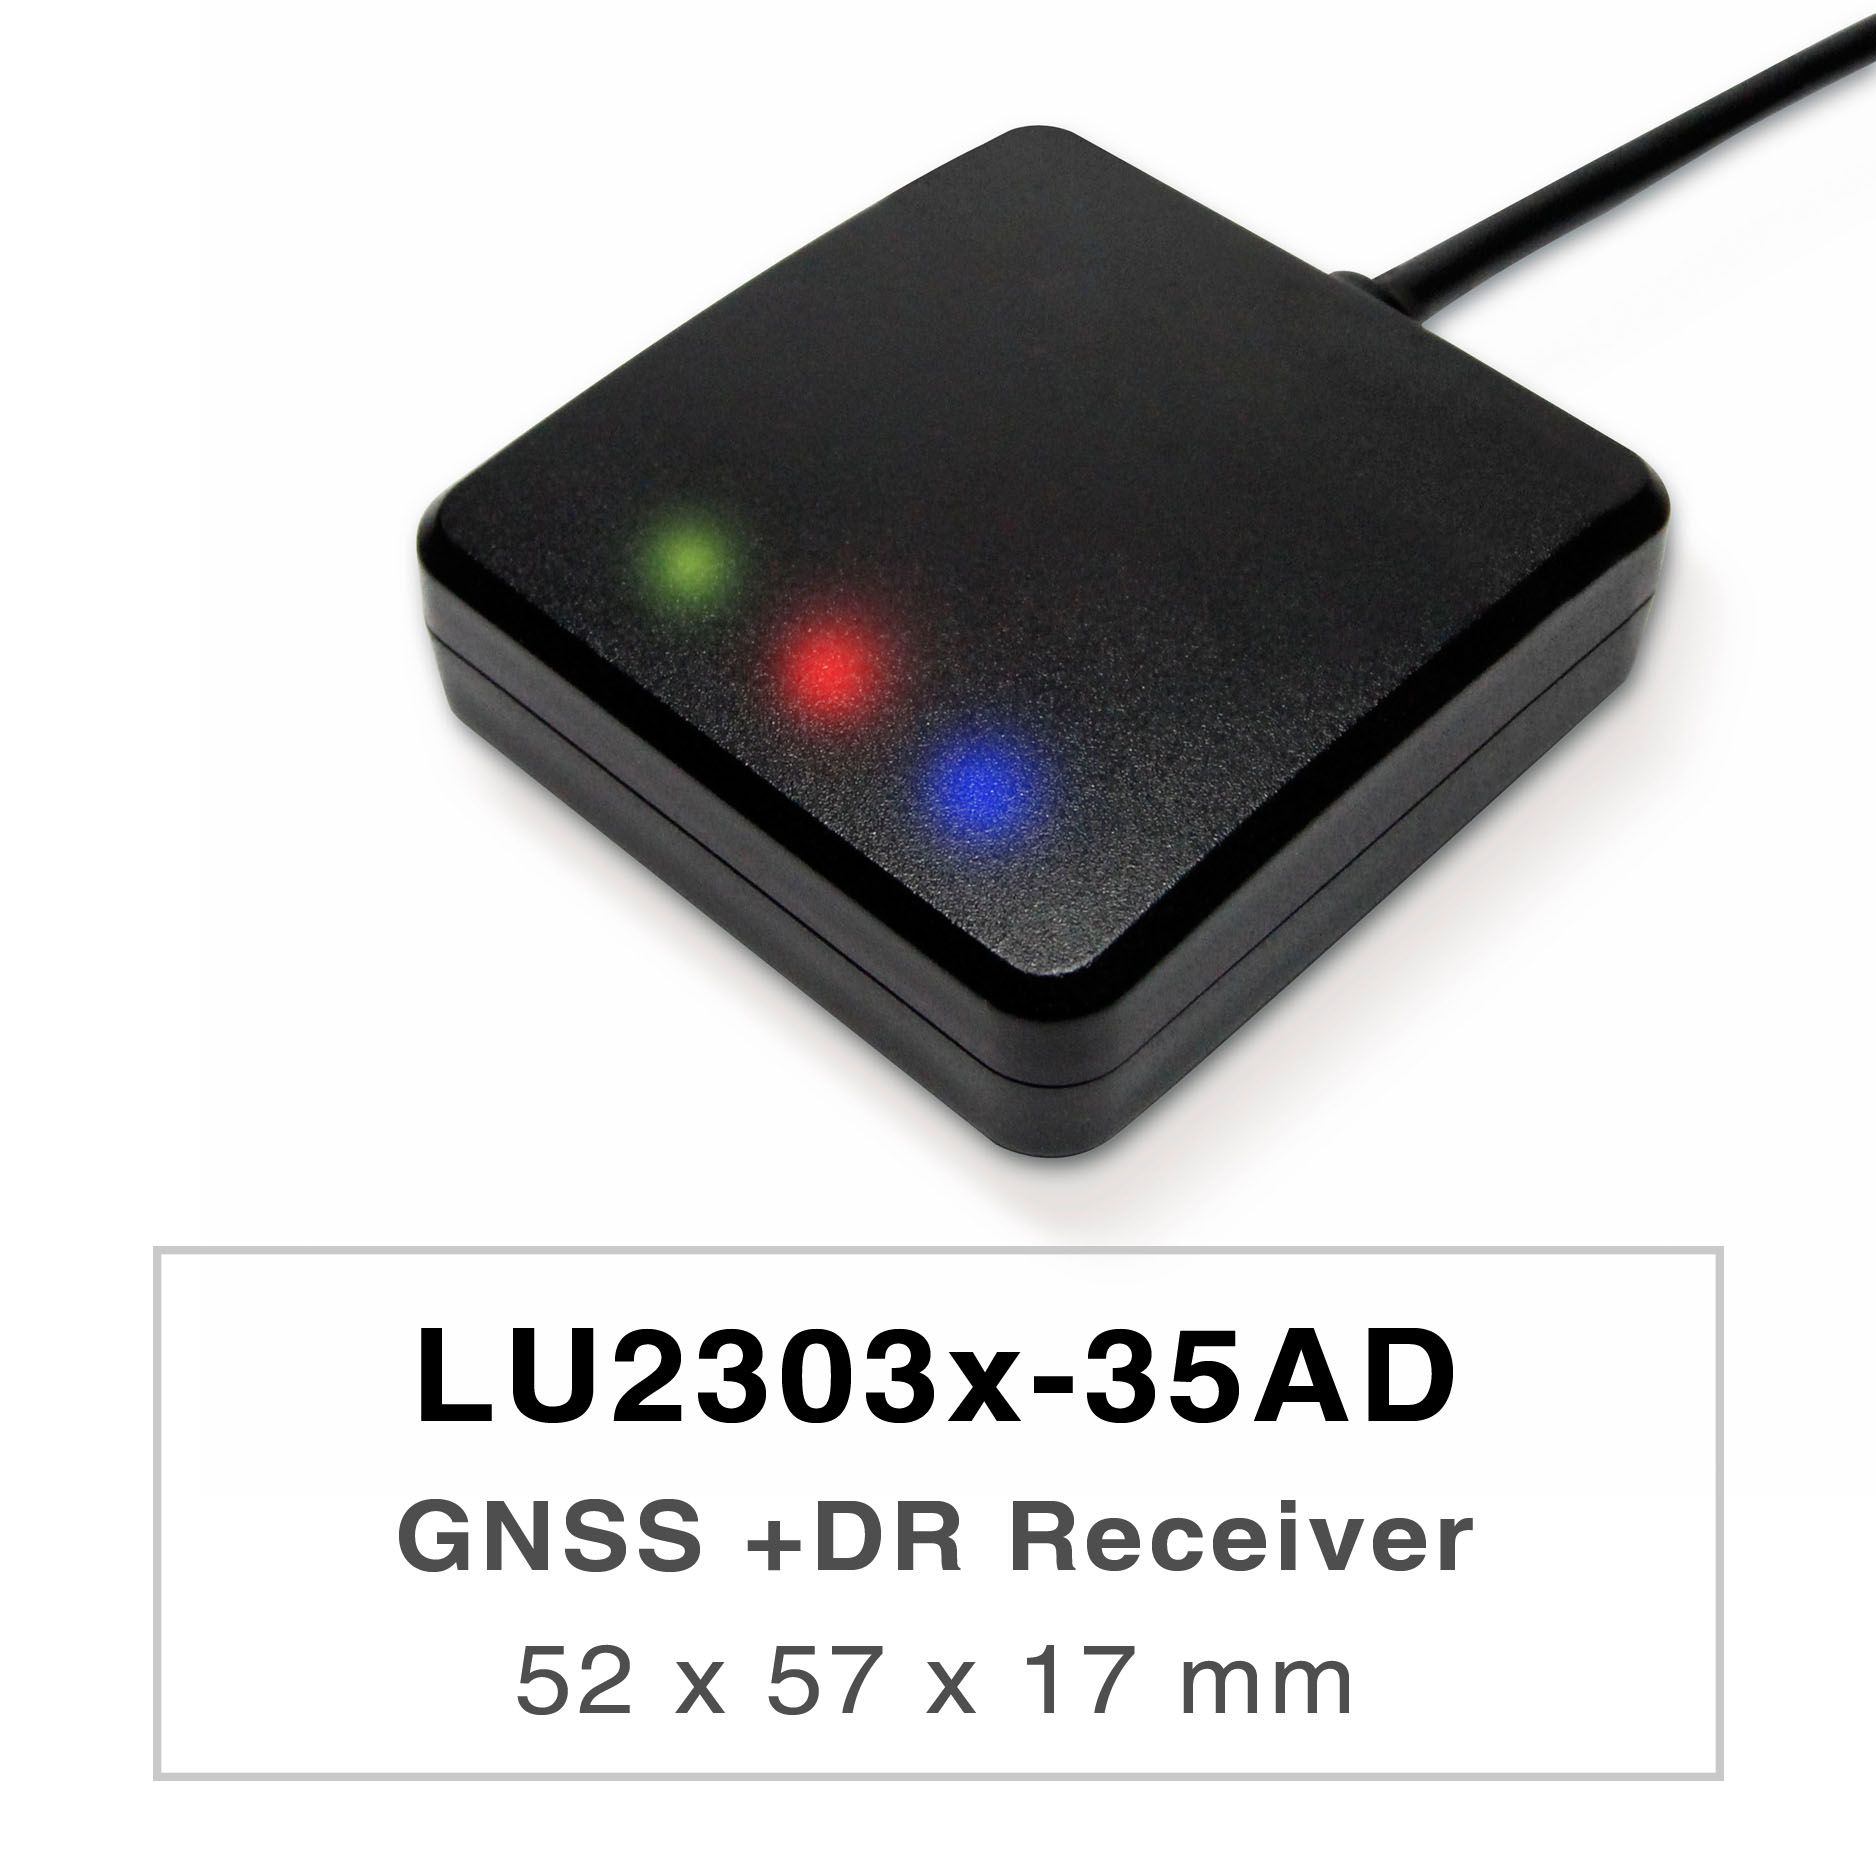 Продукты серии LU2303x-35AD представляют собой высокопроизводительные двухдиапазонные приемники GNSS UDR (Untethered Dead Reckoning) (также известные как GNSS-мышь), которые способны отслеживать все глобальные гражданские навигационные системы (GPS, ГЛОНАСС, BDS, GALILEO, QZSS). Мышь GNSS будет одновременно получать сигналы L1 и L5, обеспечивая при этом более высокую точность позиционирования.